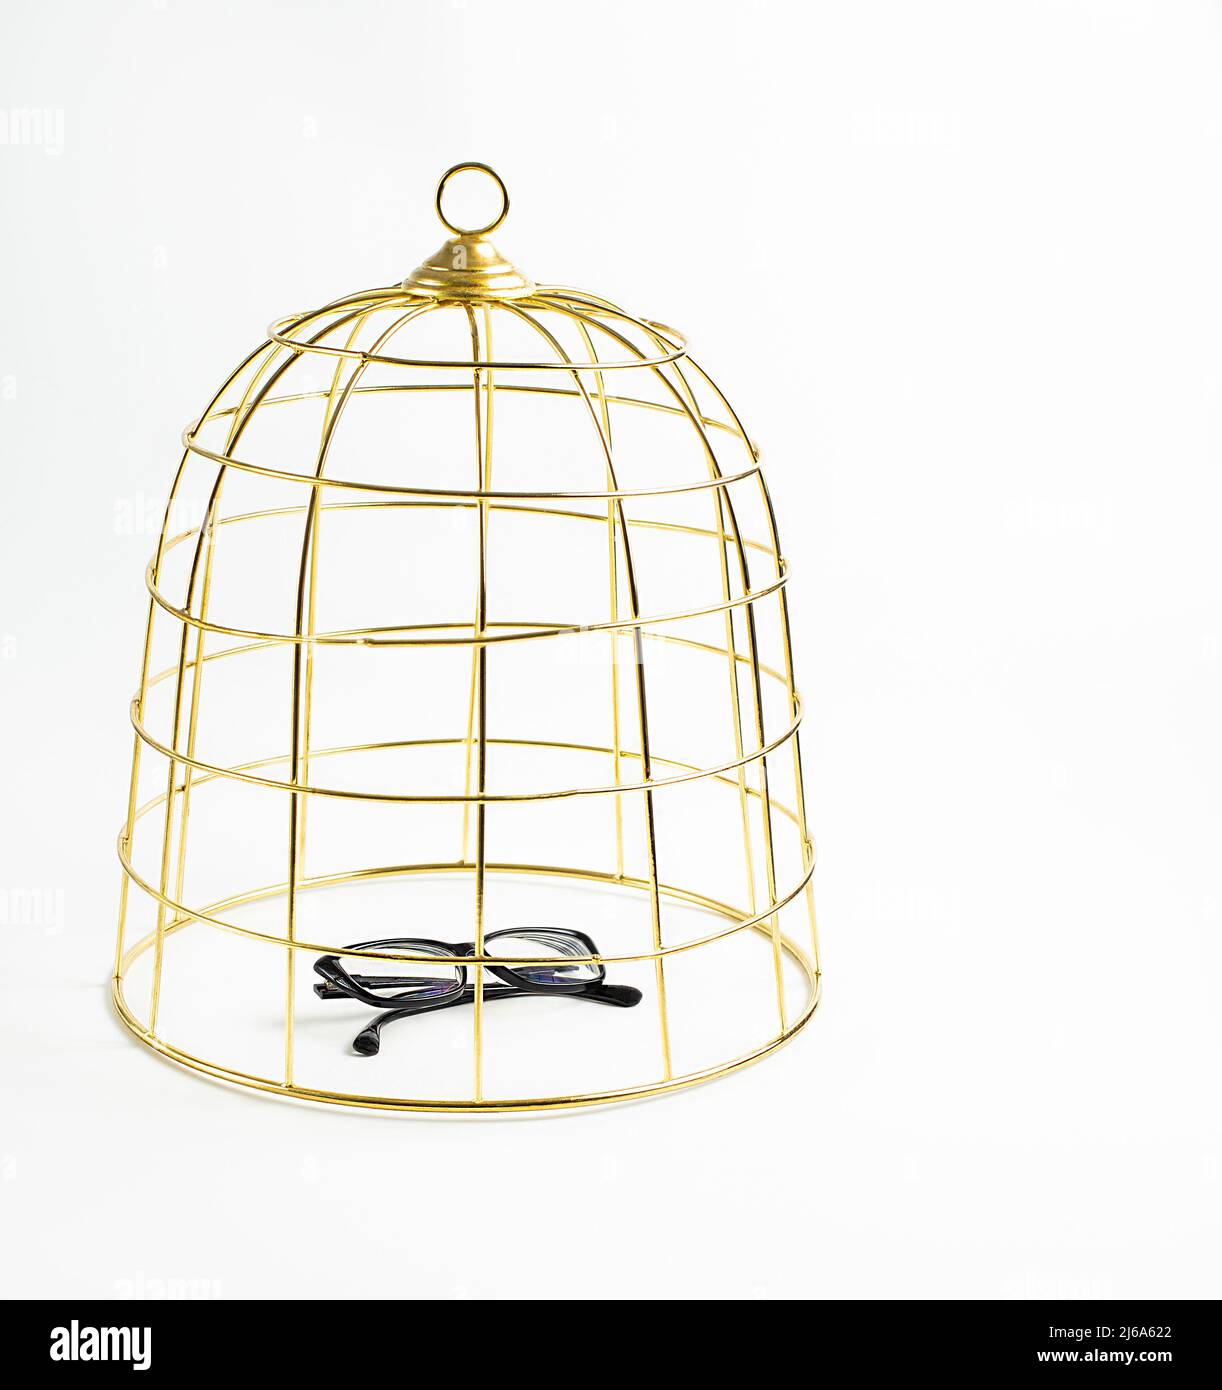 Großer goldener Vogelkäfig und schwarze Gläser auf weißem Hintergrund, Konzept, Stock Foto Stockfoto